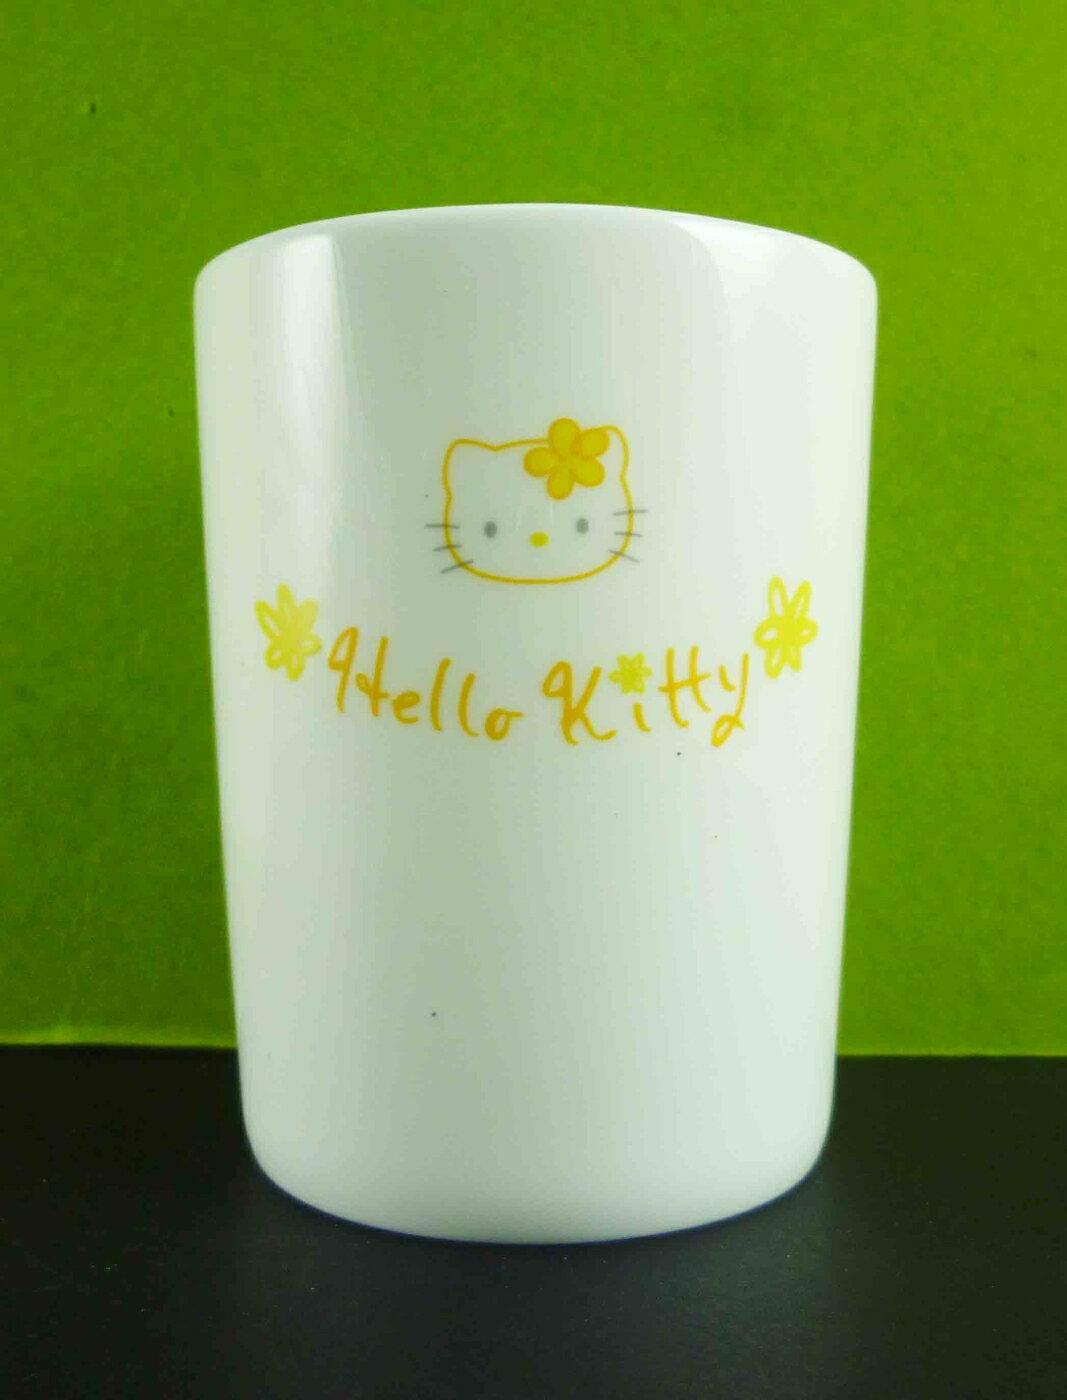 【震撼精品百貨】Hello Kitty 凱蒂貓 陶瓷杯 黃花 震撼日式精品百貨